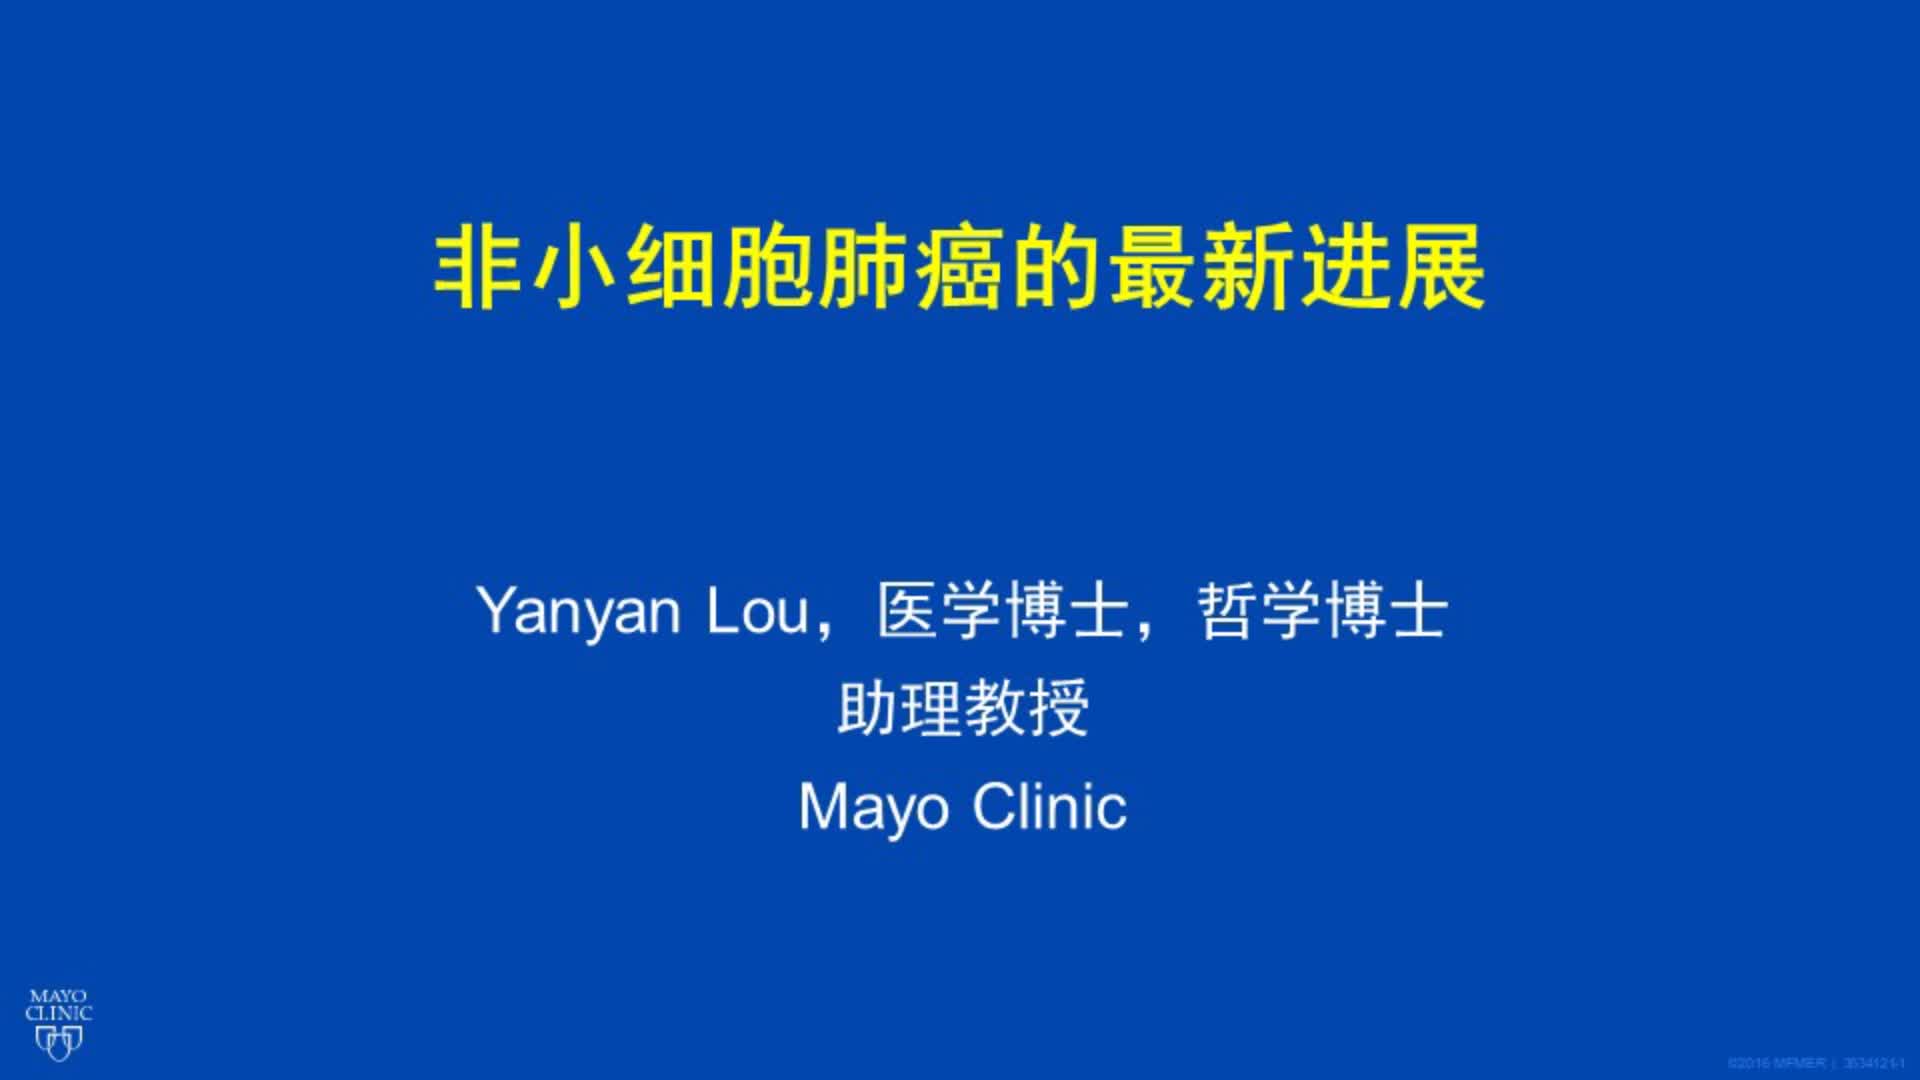  Mayo Clinic非小细胞肺癌最新进展